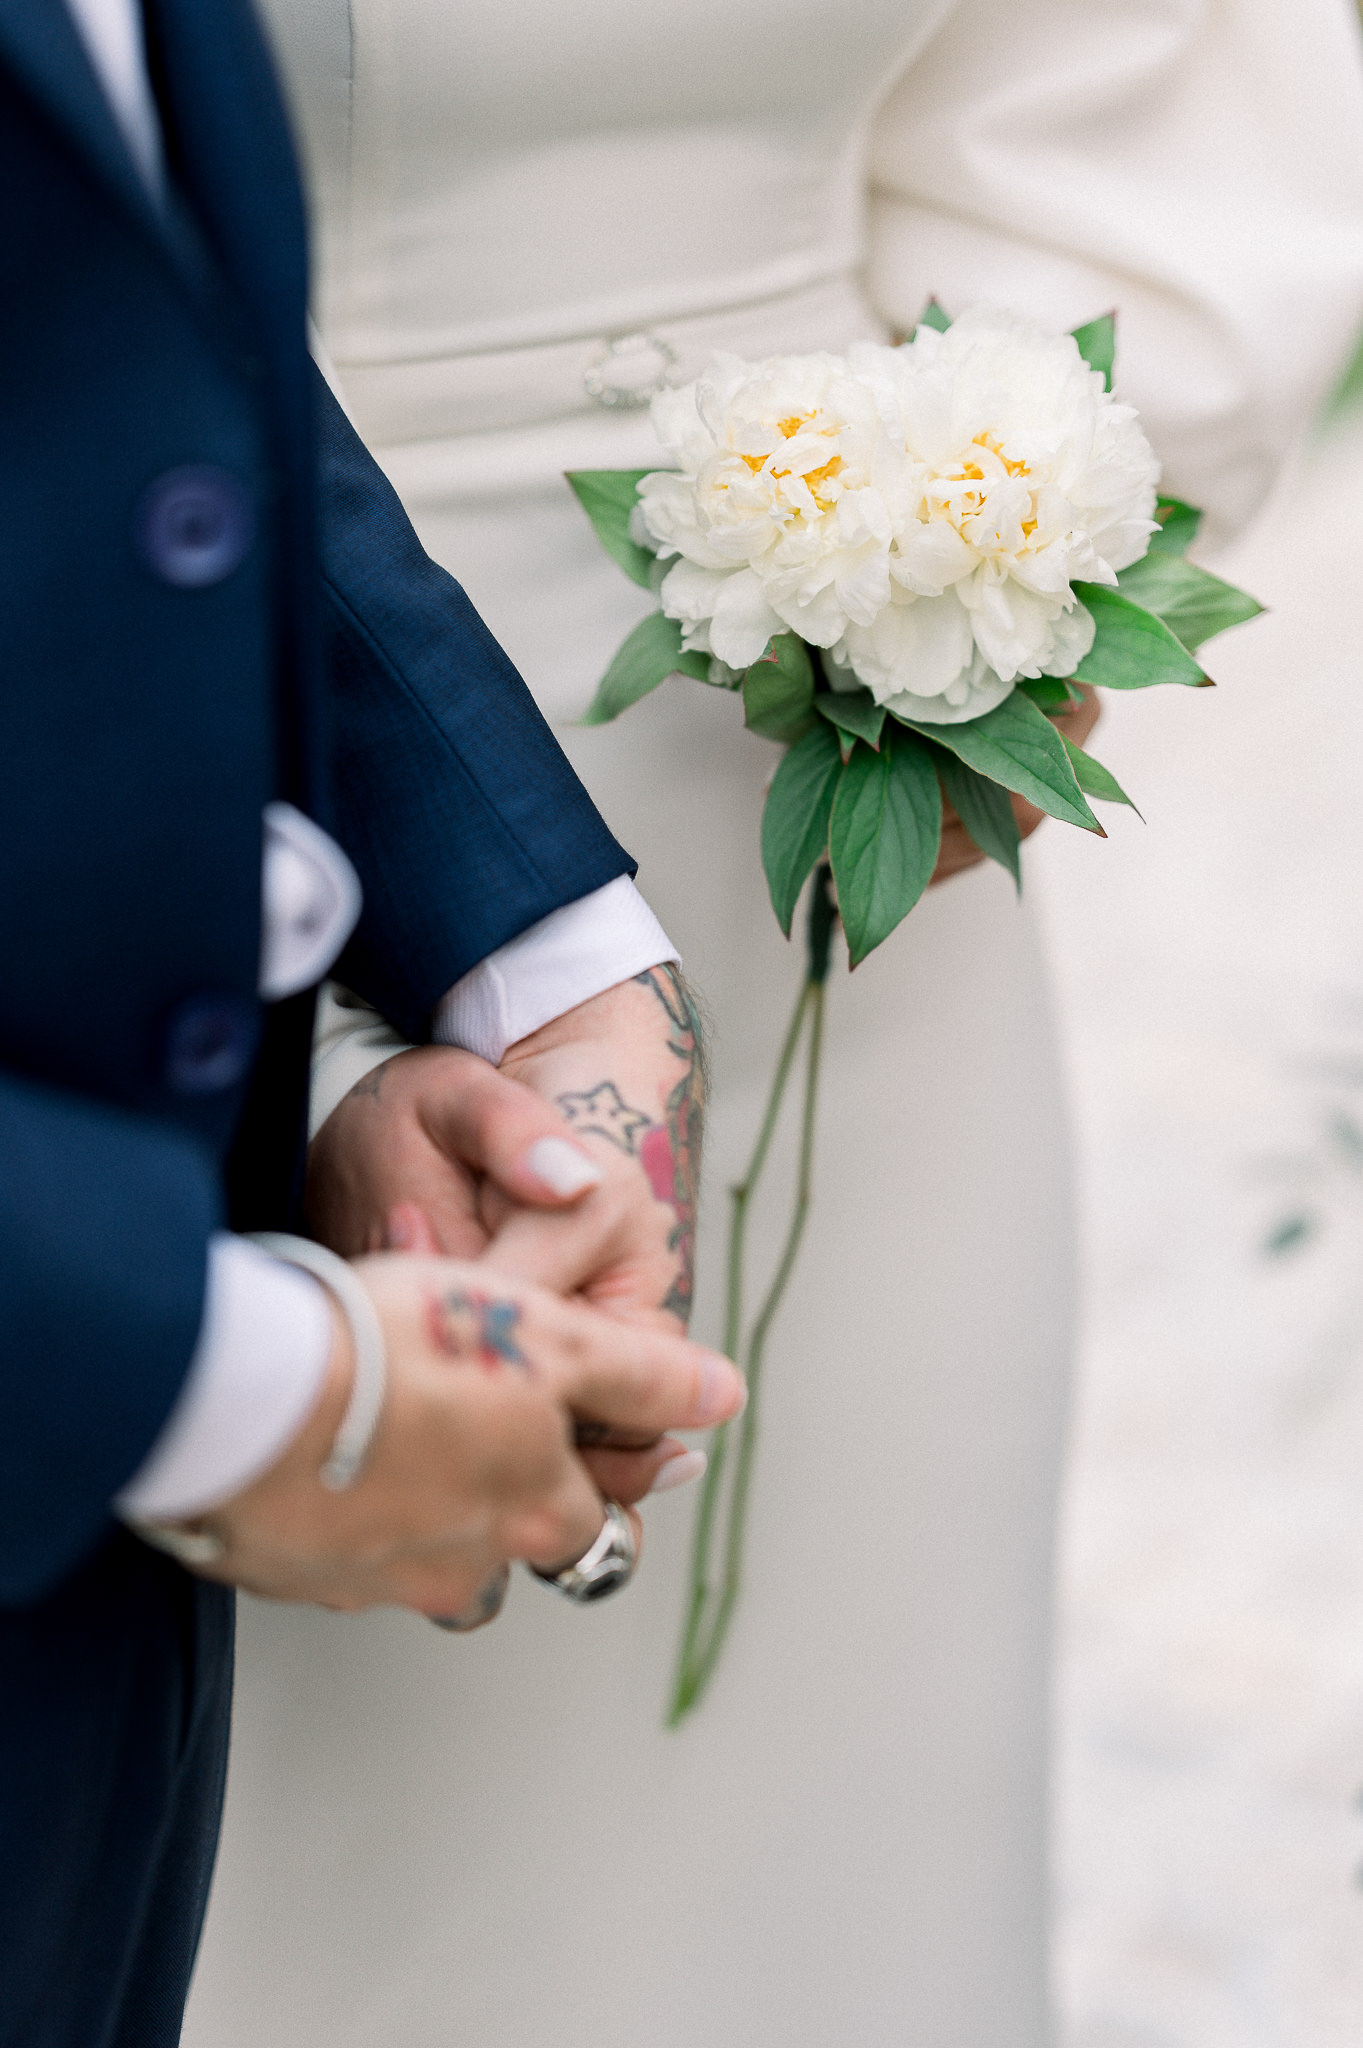 Micro wedding intimista numa tarde adorável e romântica em Itu